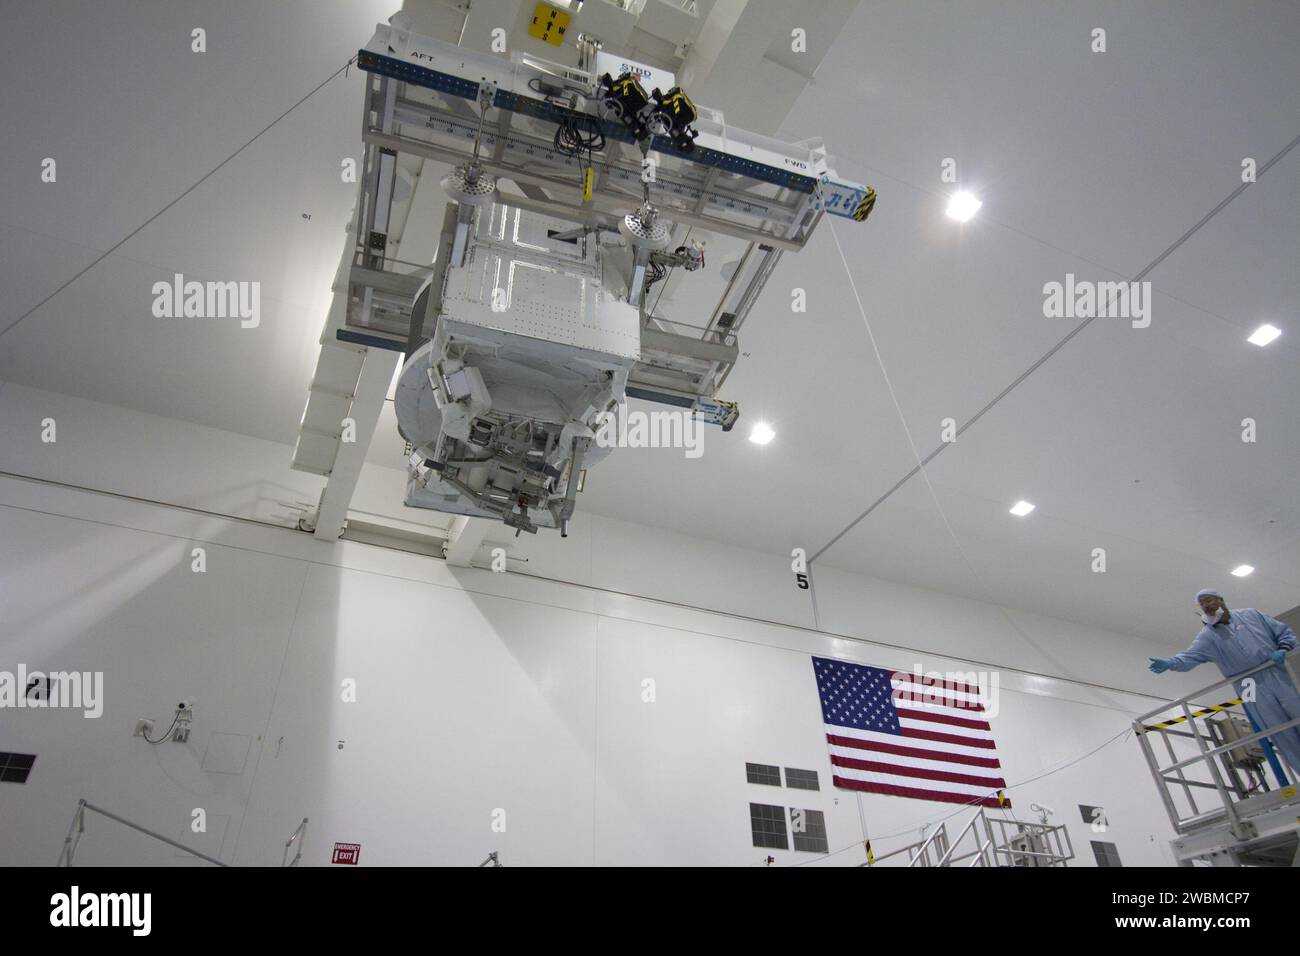 CAPE CANAVERAL, Fla. -- in der Raumstation-Verarbeitungsanlage im Kennedy Space Center der NASA in Florida bewegt sich das Alpha Magnetic Spectrometer-2 (AMS) von seinem primären Arbeitsstand zum Gewicht- und Schwerpunktstand, wo die letzten Messungen vor dem Start durchgeführt werden. Als Nächstes wird AMS in einen Nutzlastbehälter gebracht. Der Kanister wird die raumgebundene Nutzlast auf der Reise zum Launch Pad 39A schützen, wo sie später im Nutzlastbereich des Space Shuttle Endeavour installiert wird. AMS ist ein Teilchenphysik-Detektor, der als externes Experiment auf der International Space St eingesetzt werden kann Stockfoto